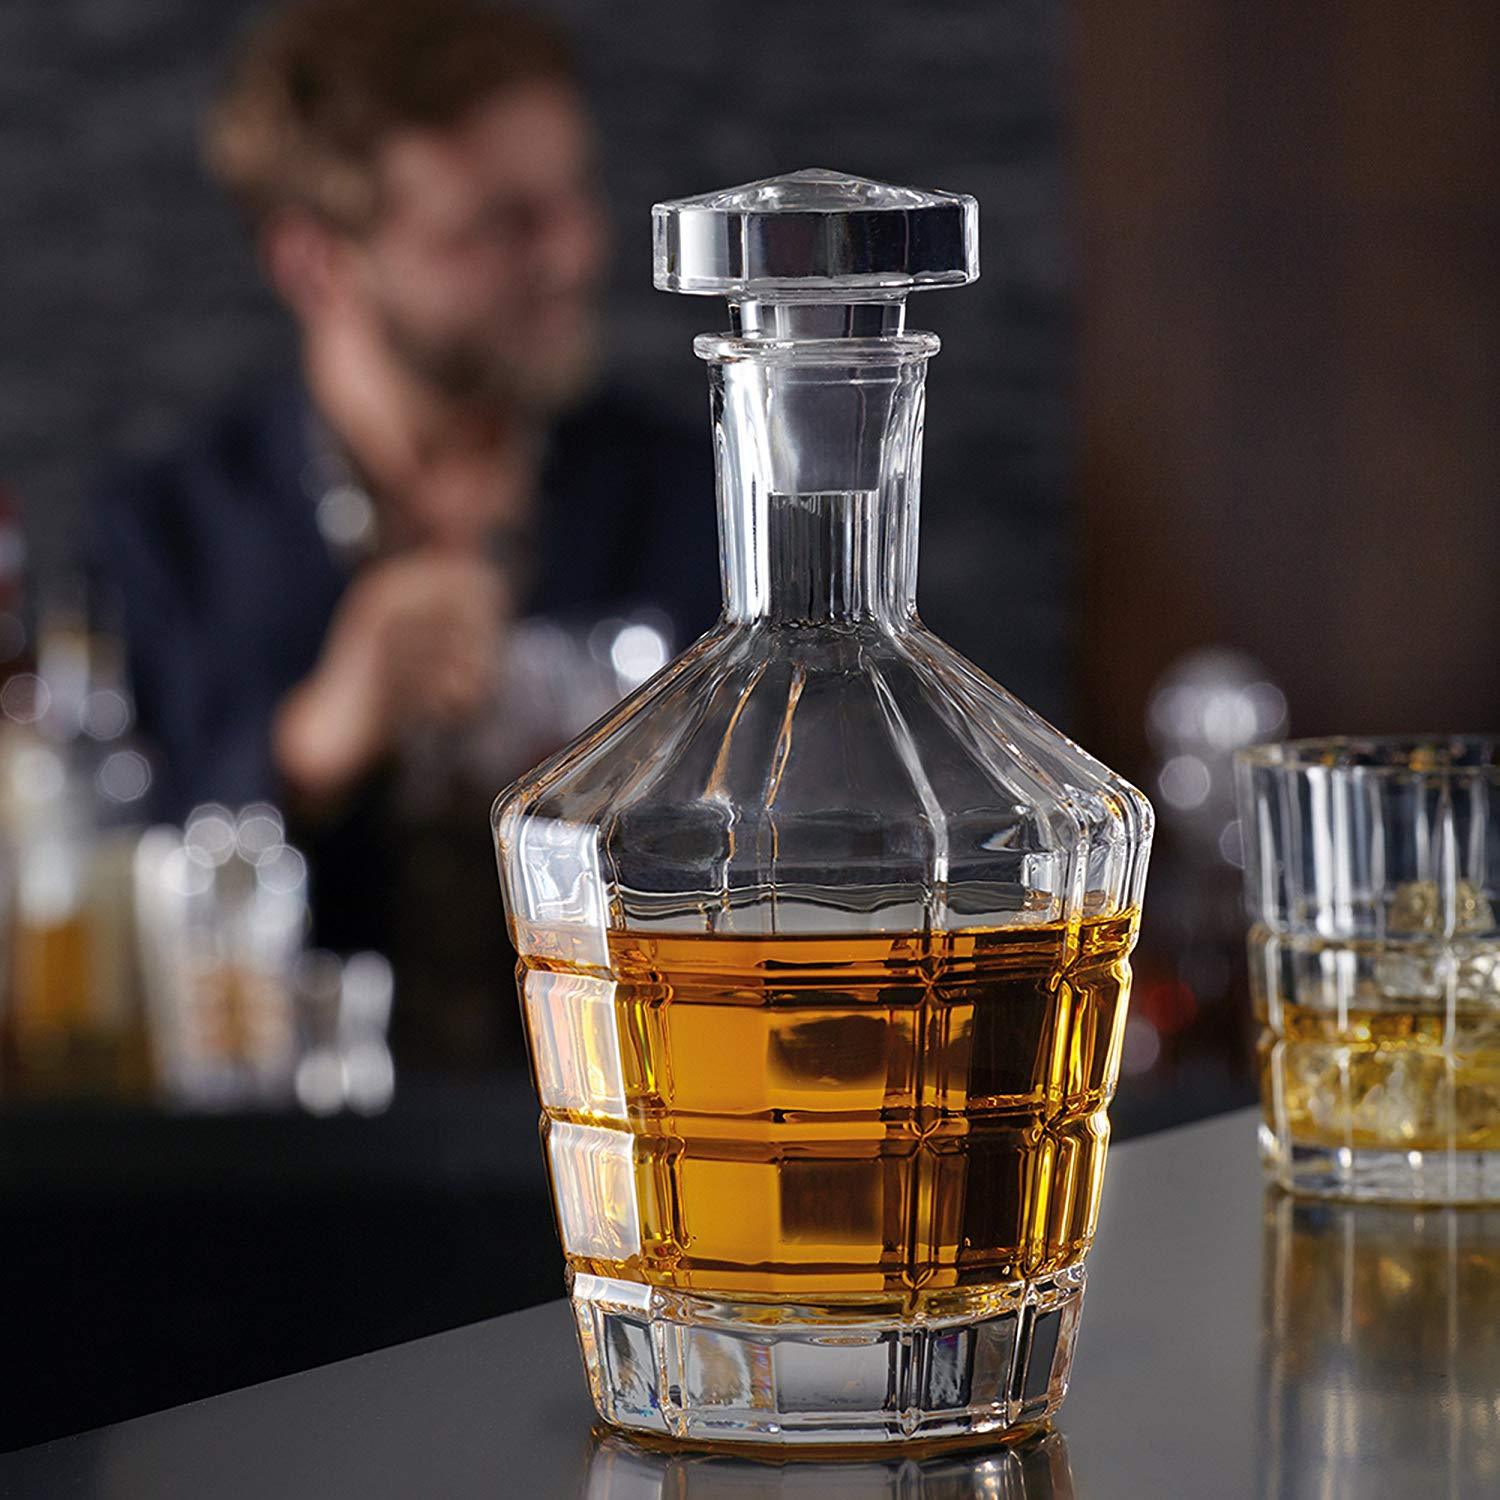 leonardo-whisky-carafe-decanter-spiritii-750ml